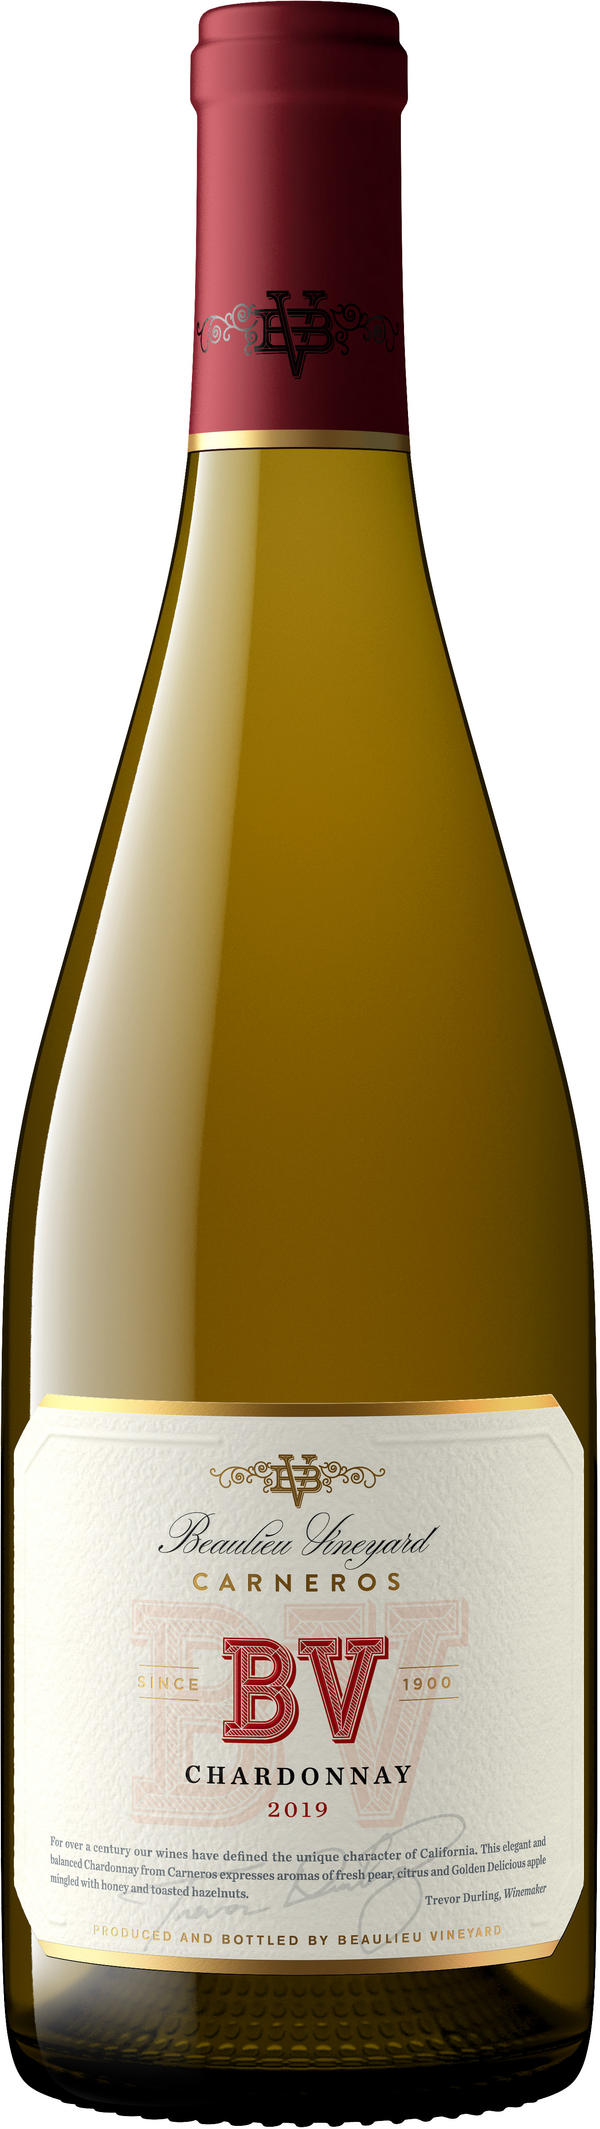 BV Carneros Chardonnay 2019 750ml